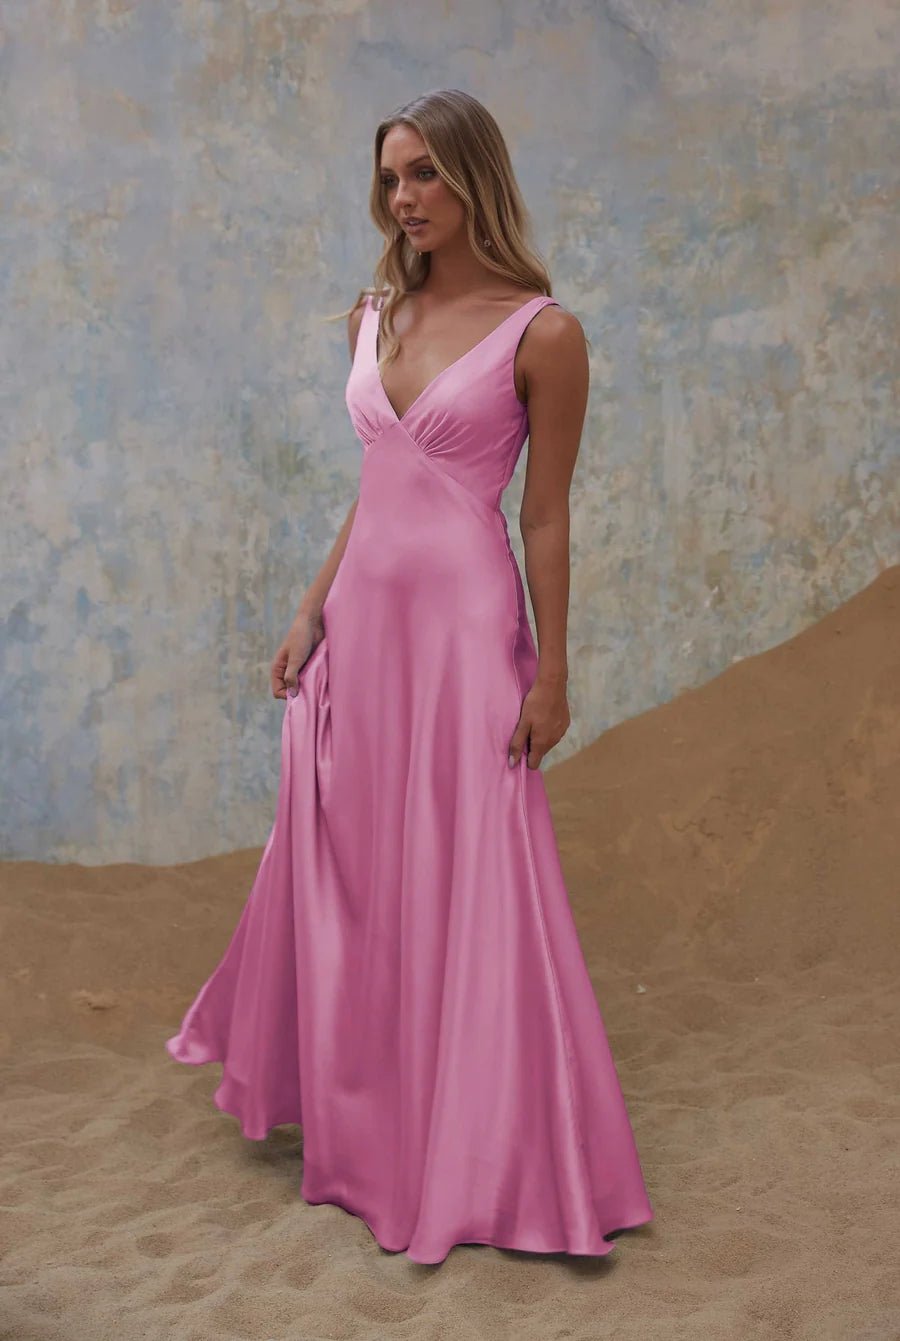 Avonlea Dress By Tania Olsen Sizes 18 - 30 TO2428 - ElissaJay Boutique